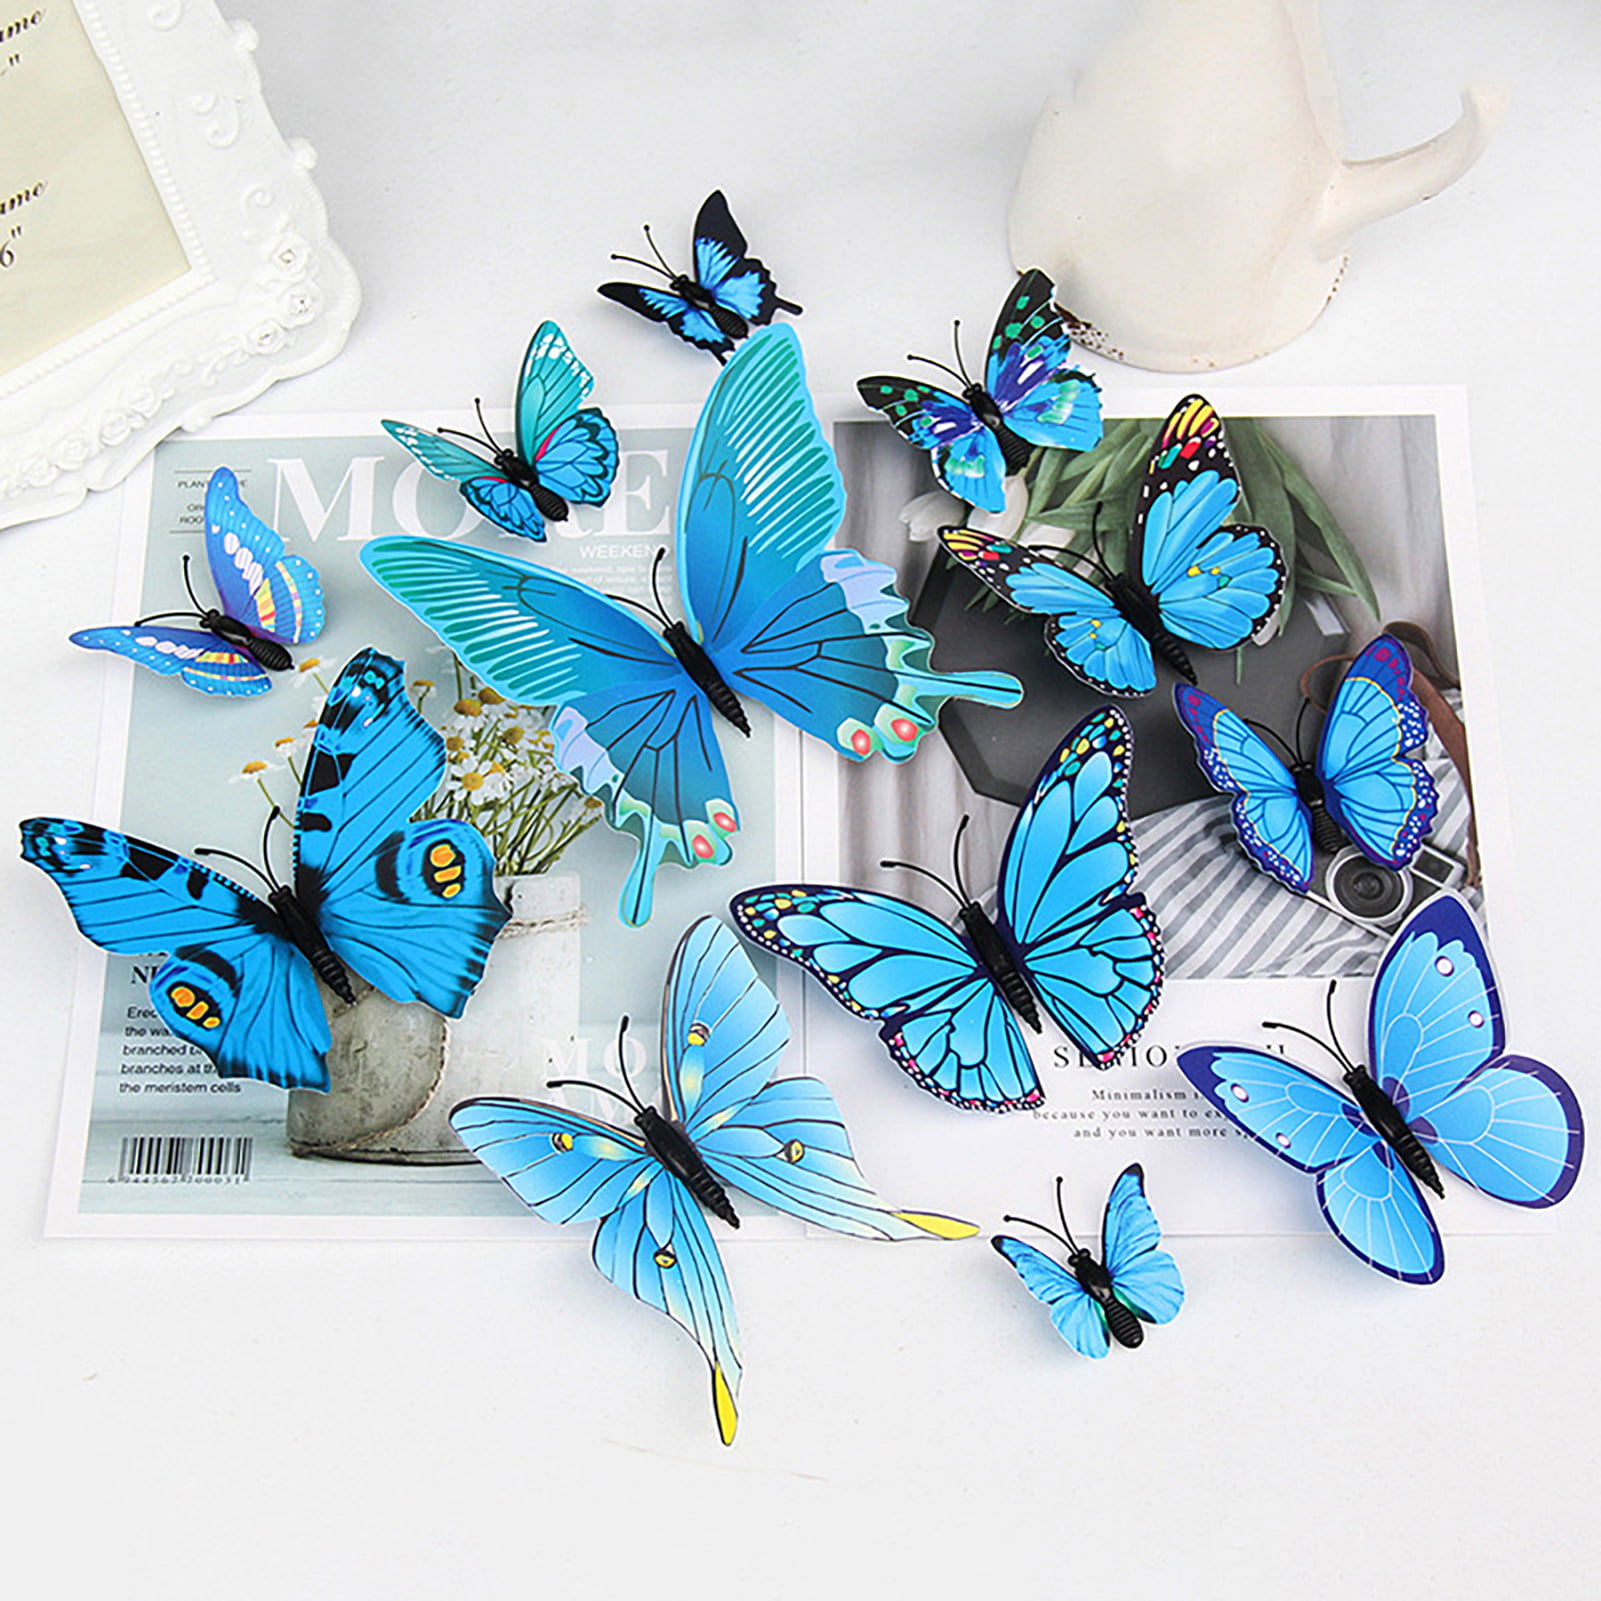 Sticker Mural Papillons en 3D - Lot de 18 pièces